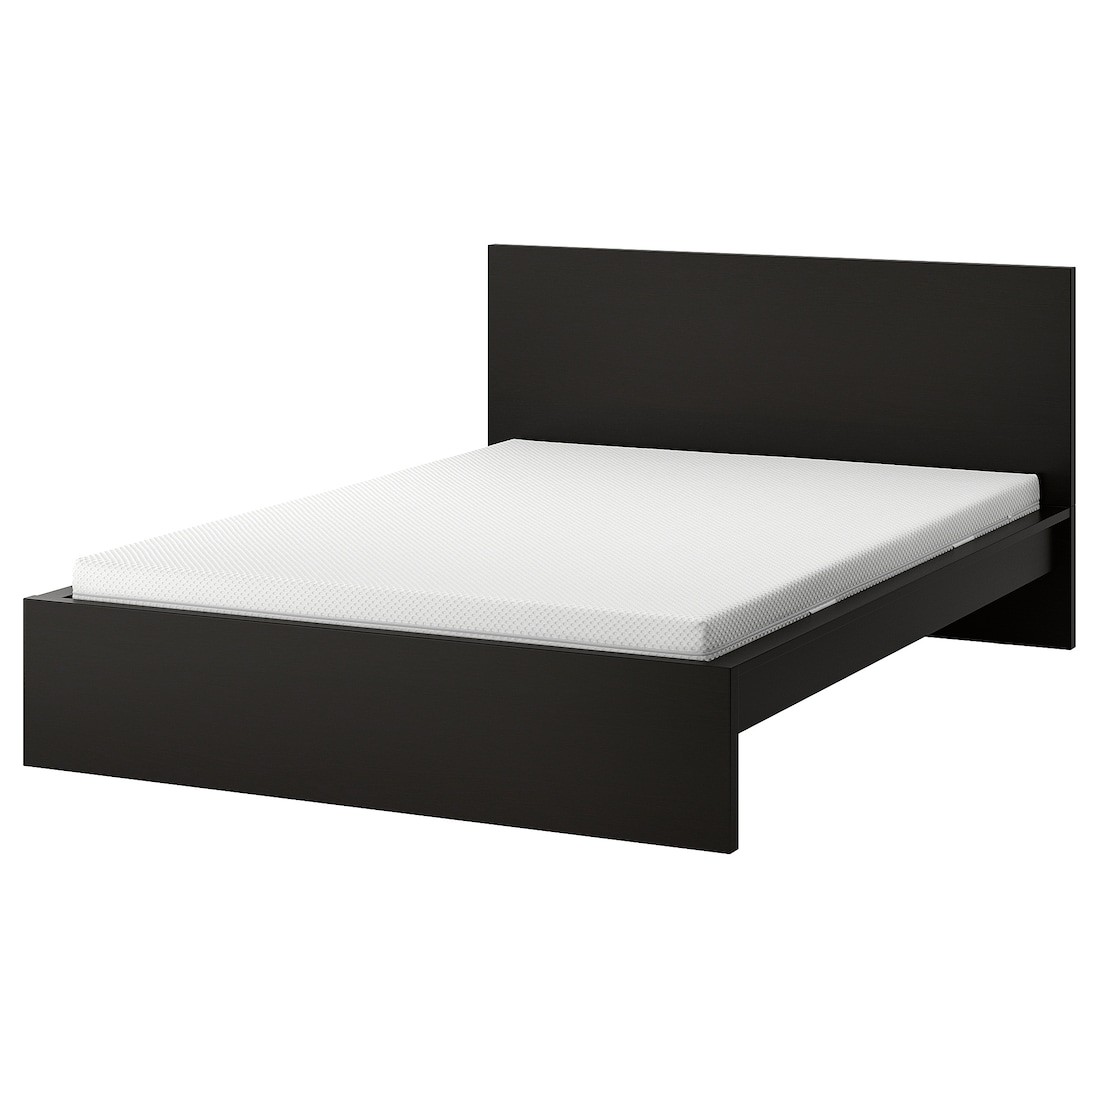 MALM Кровать с матрасом, черно-коричневый / Åbygda средней твердости, 160x200 см